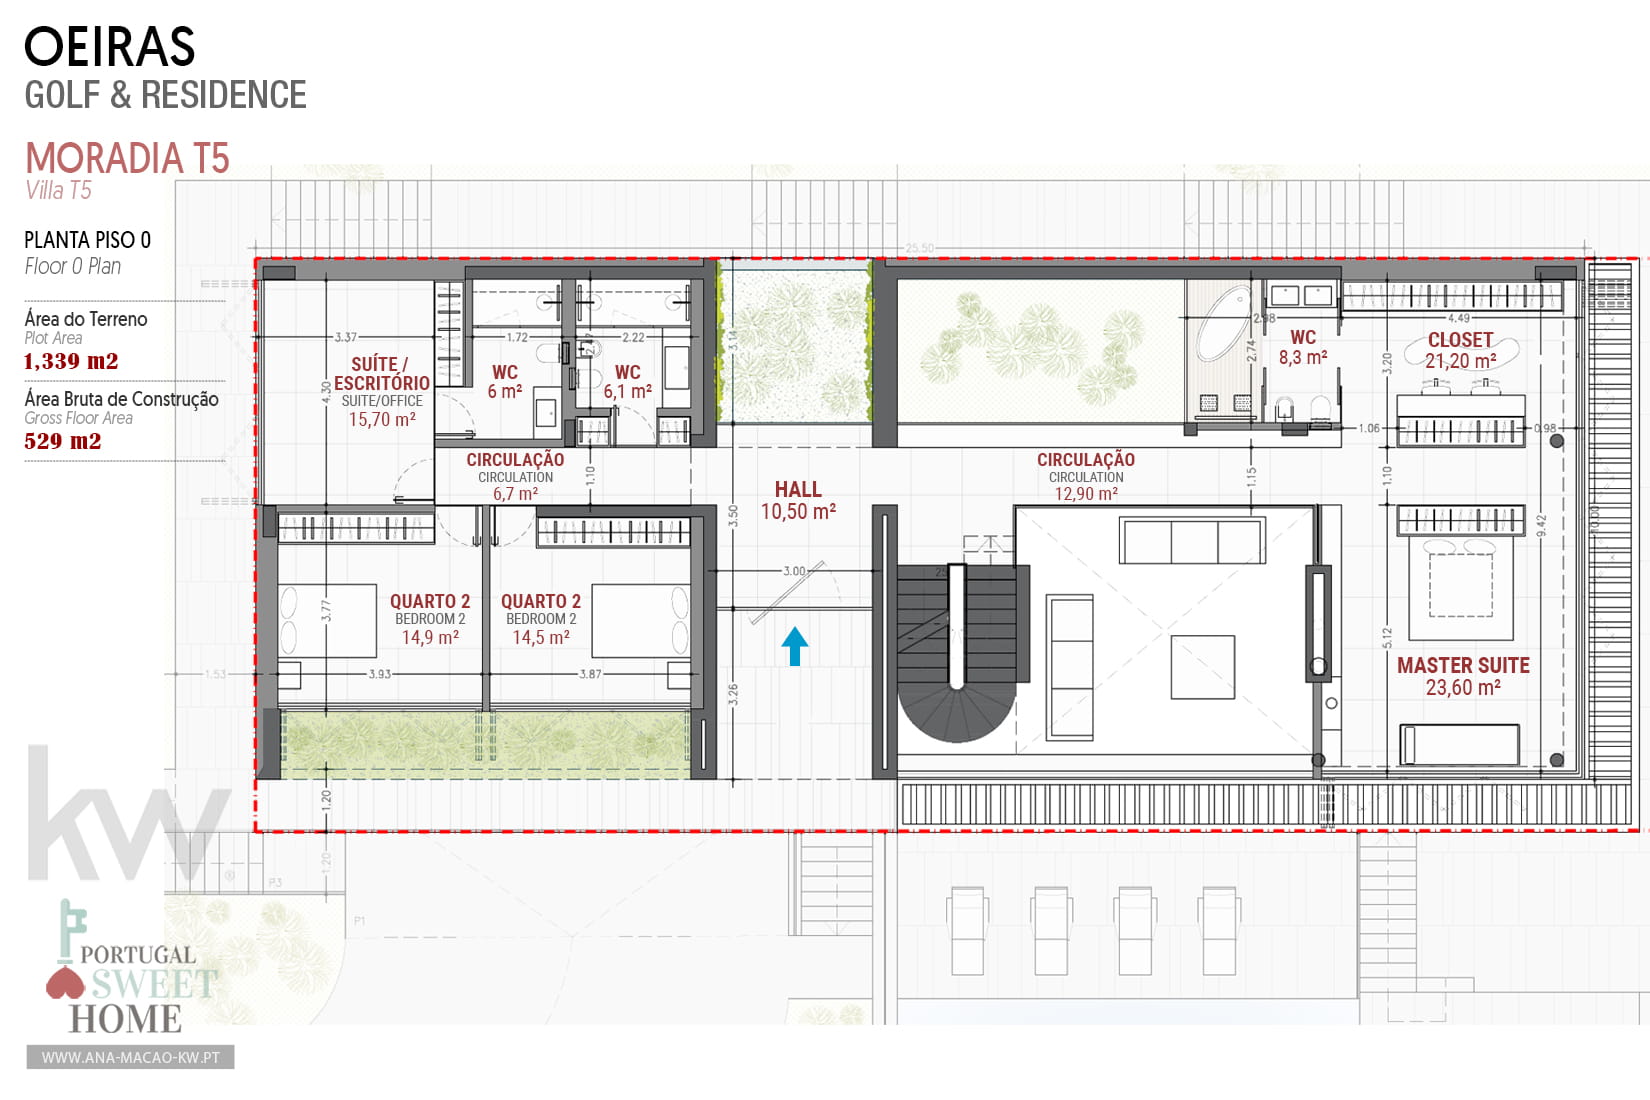 Ground floor plan (bedrooms)